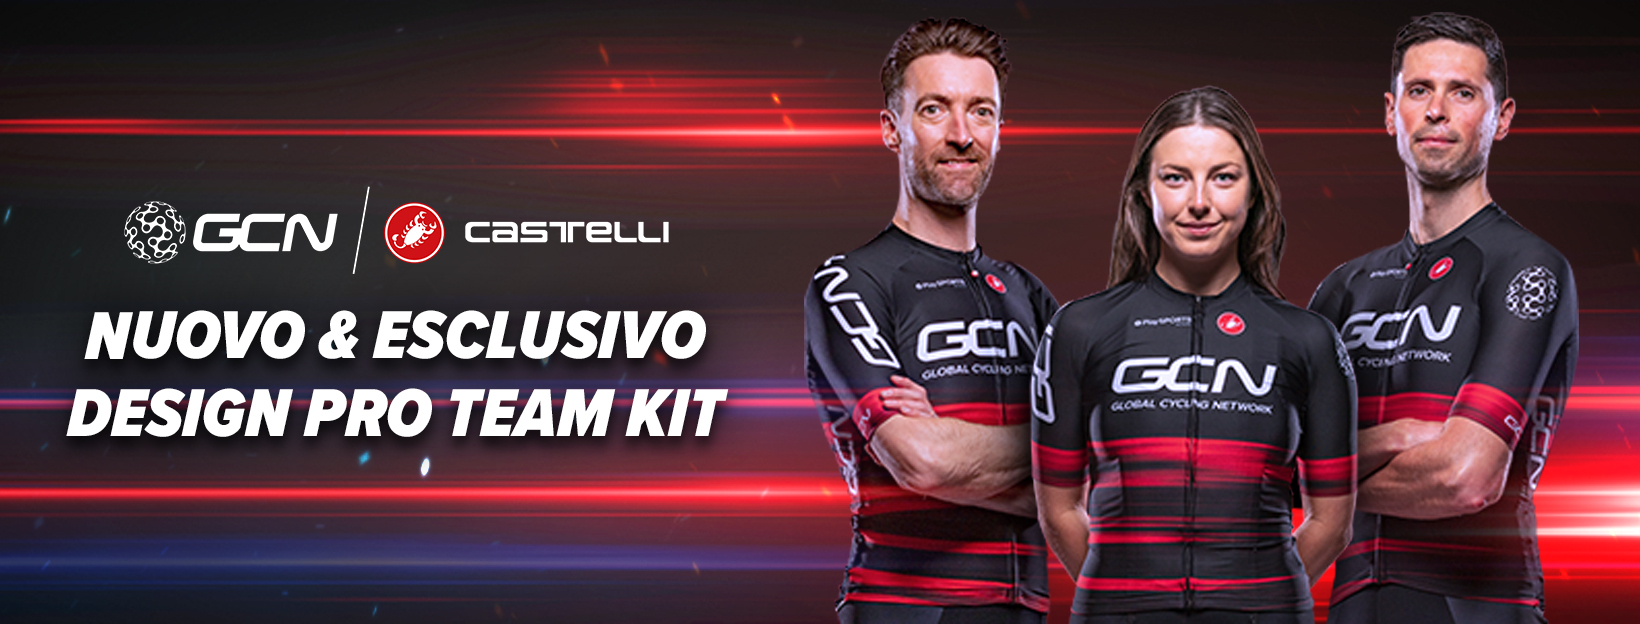 GCN Castelli Pro Team Kit